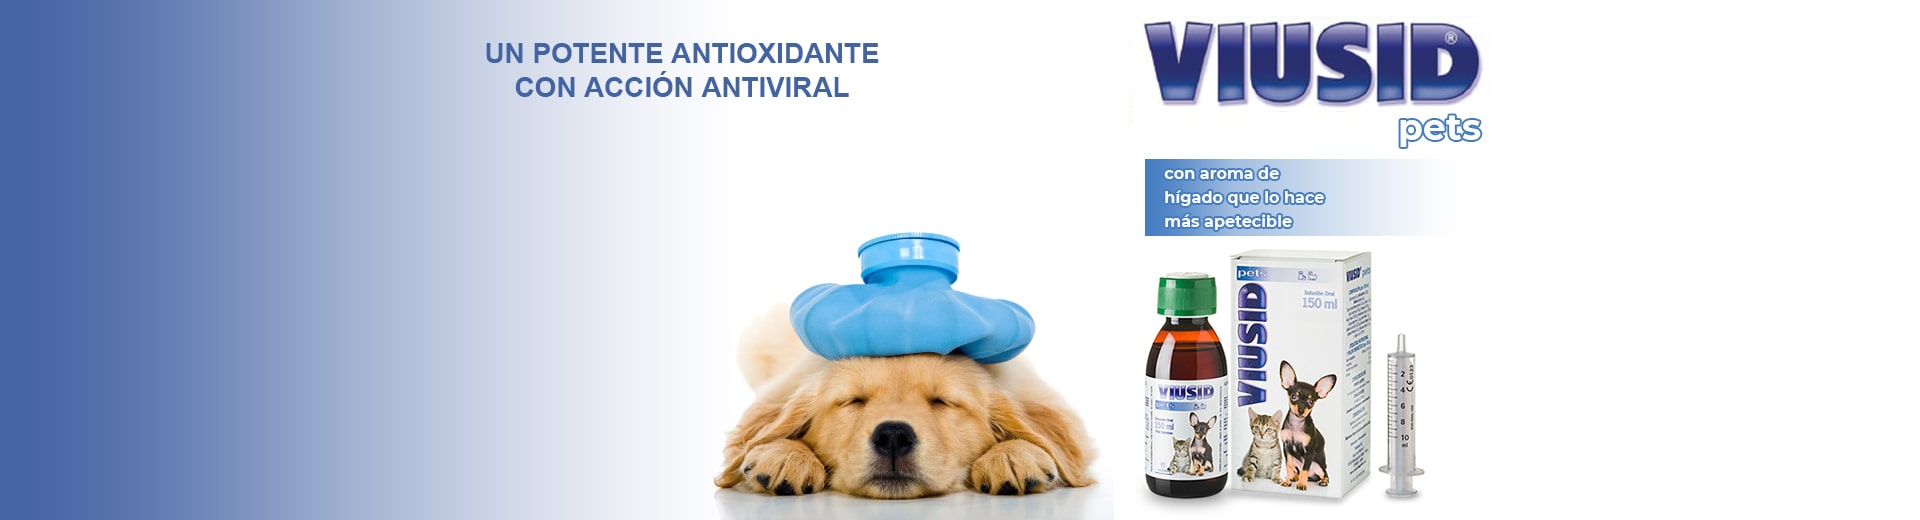 Viusid Pets | Potente antioxidante con acción antiviral | Dermaceutical México